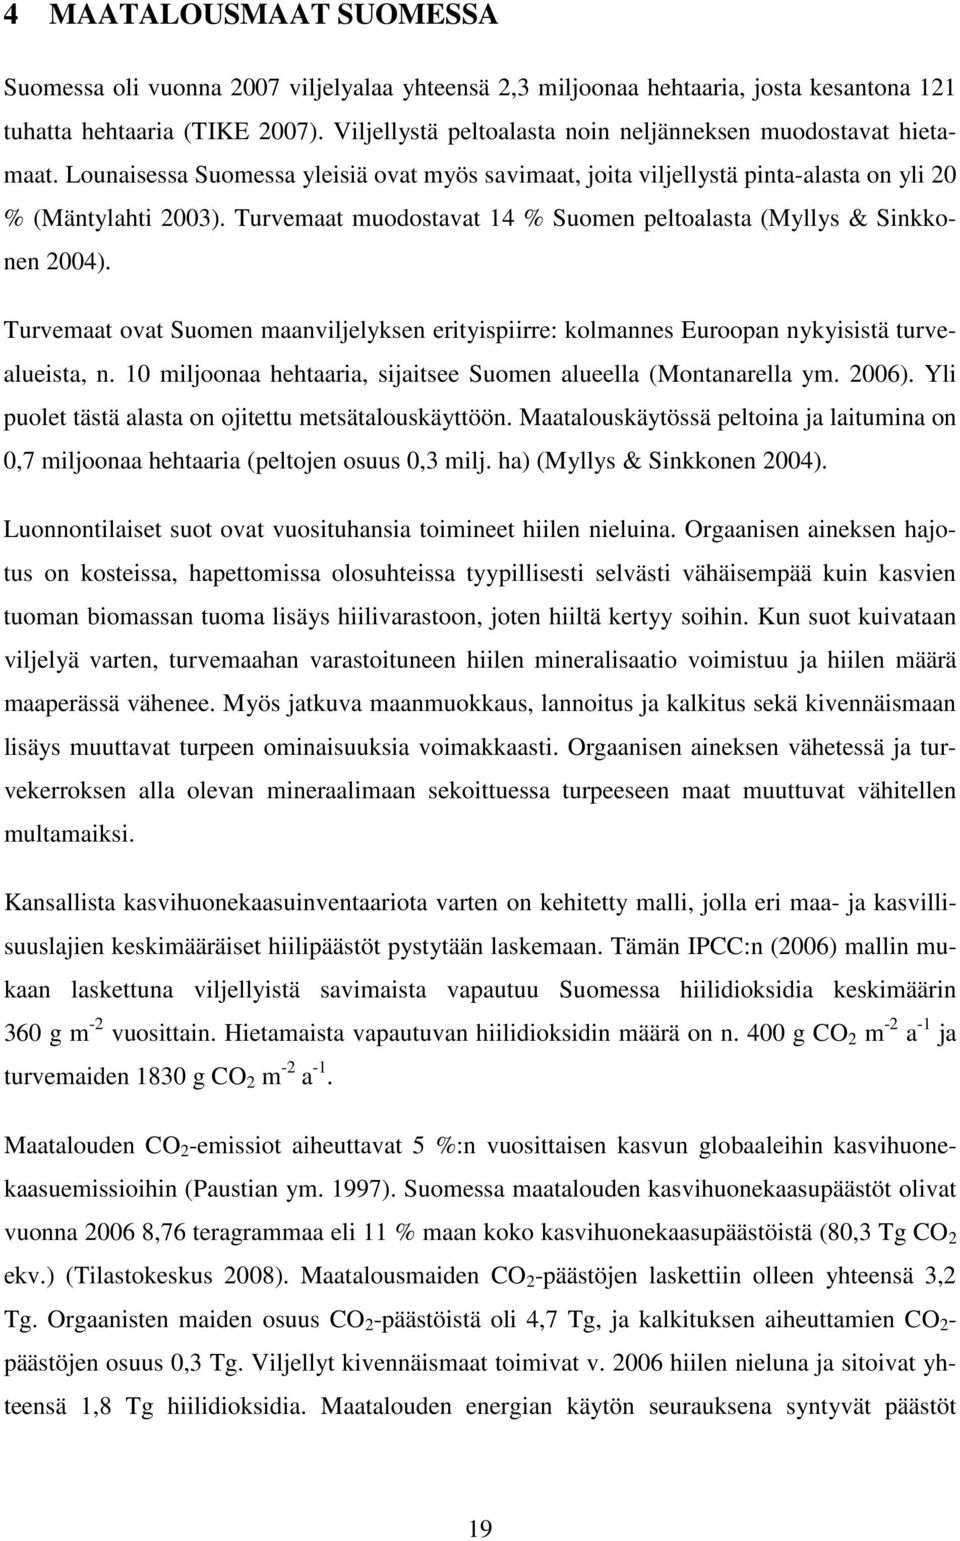 Turvemaat muodostavat 14 % Suomen peltoalasta (Myllys & Sinkkonen 2004). Turvemaat ovat Suomen maanviljelyksen erityispiirre: kolmannes Euroopan nykyisistä turvealueista, n.